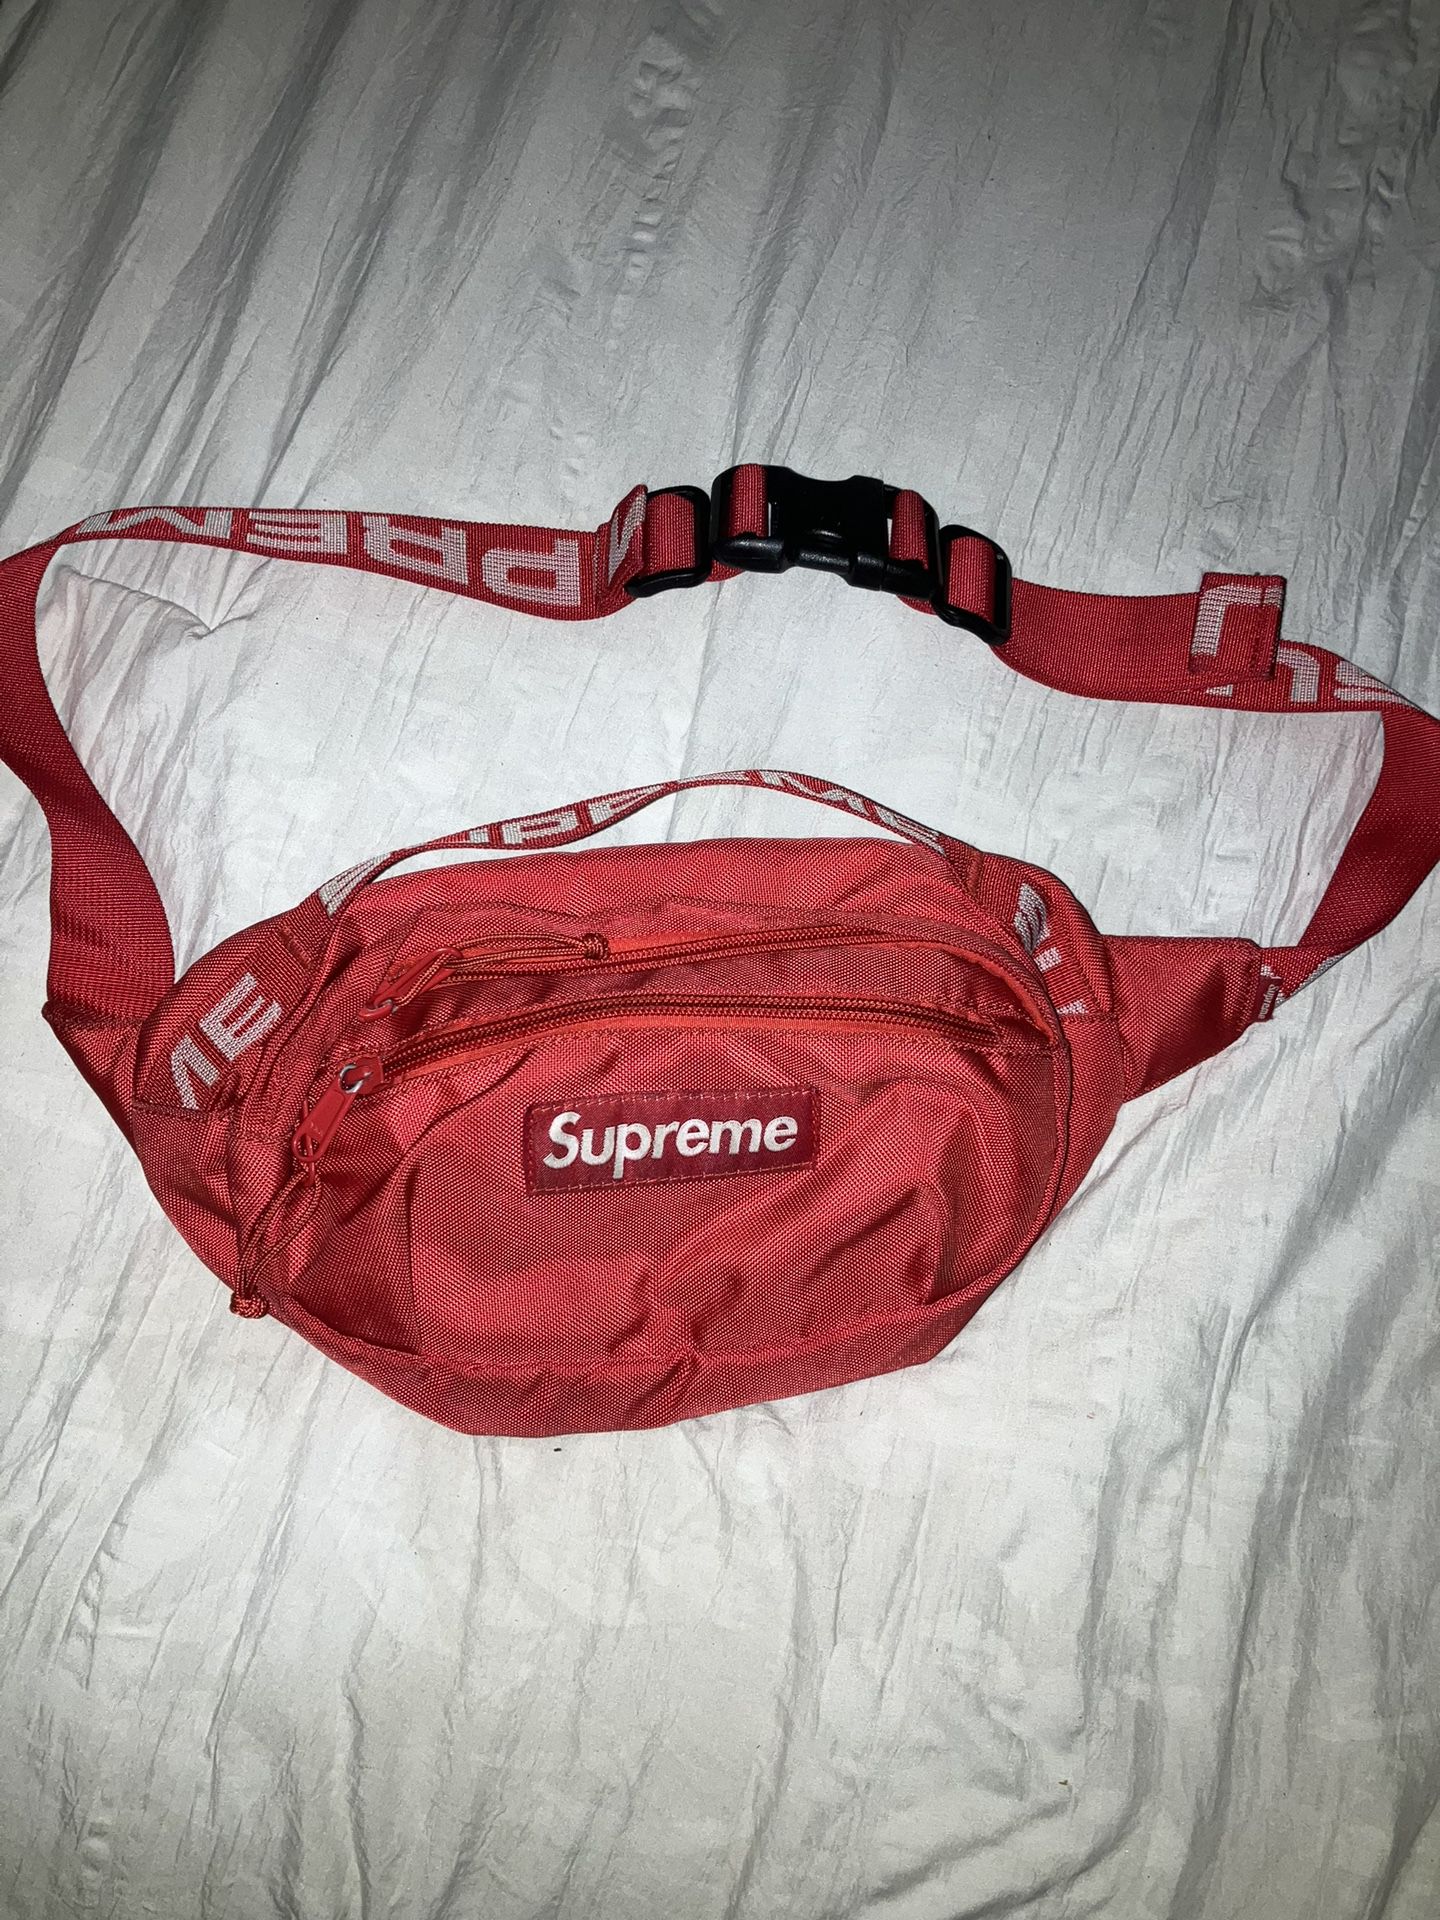 supreme bag 